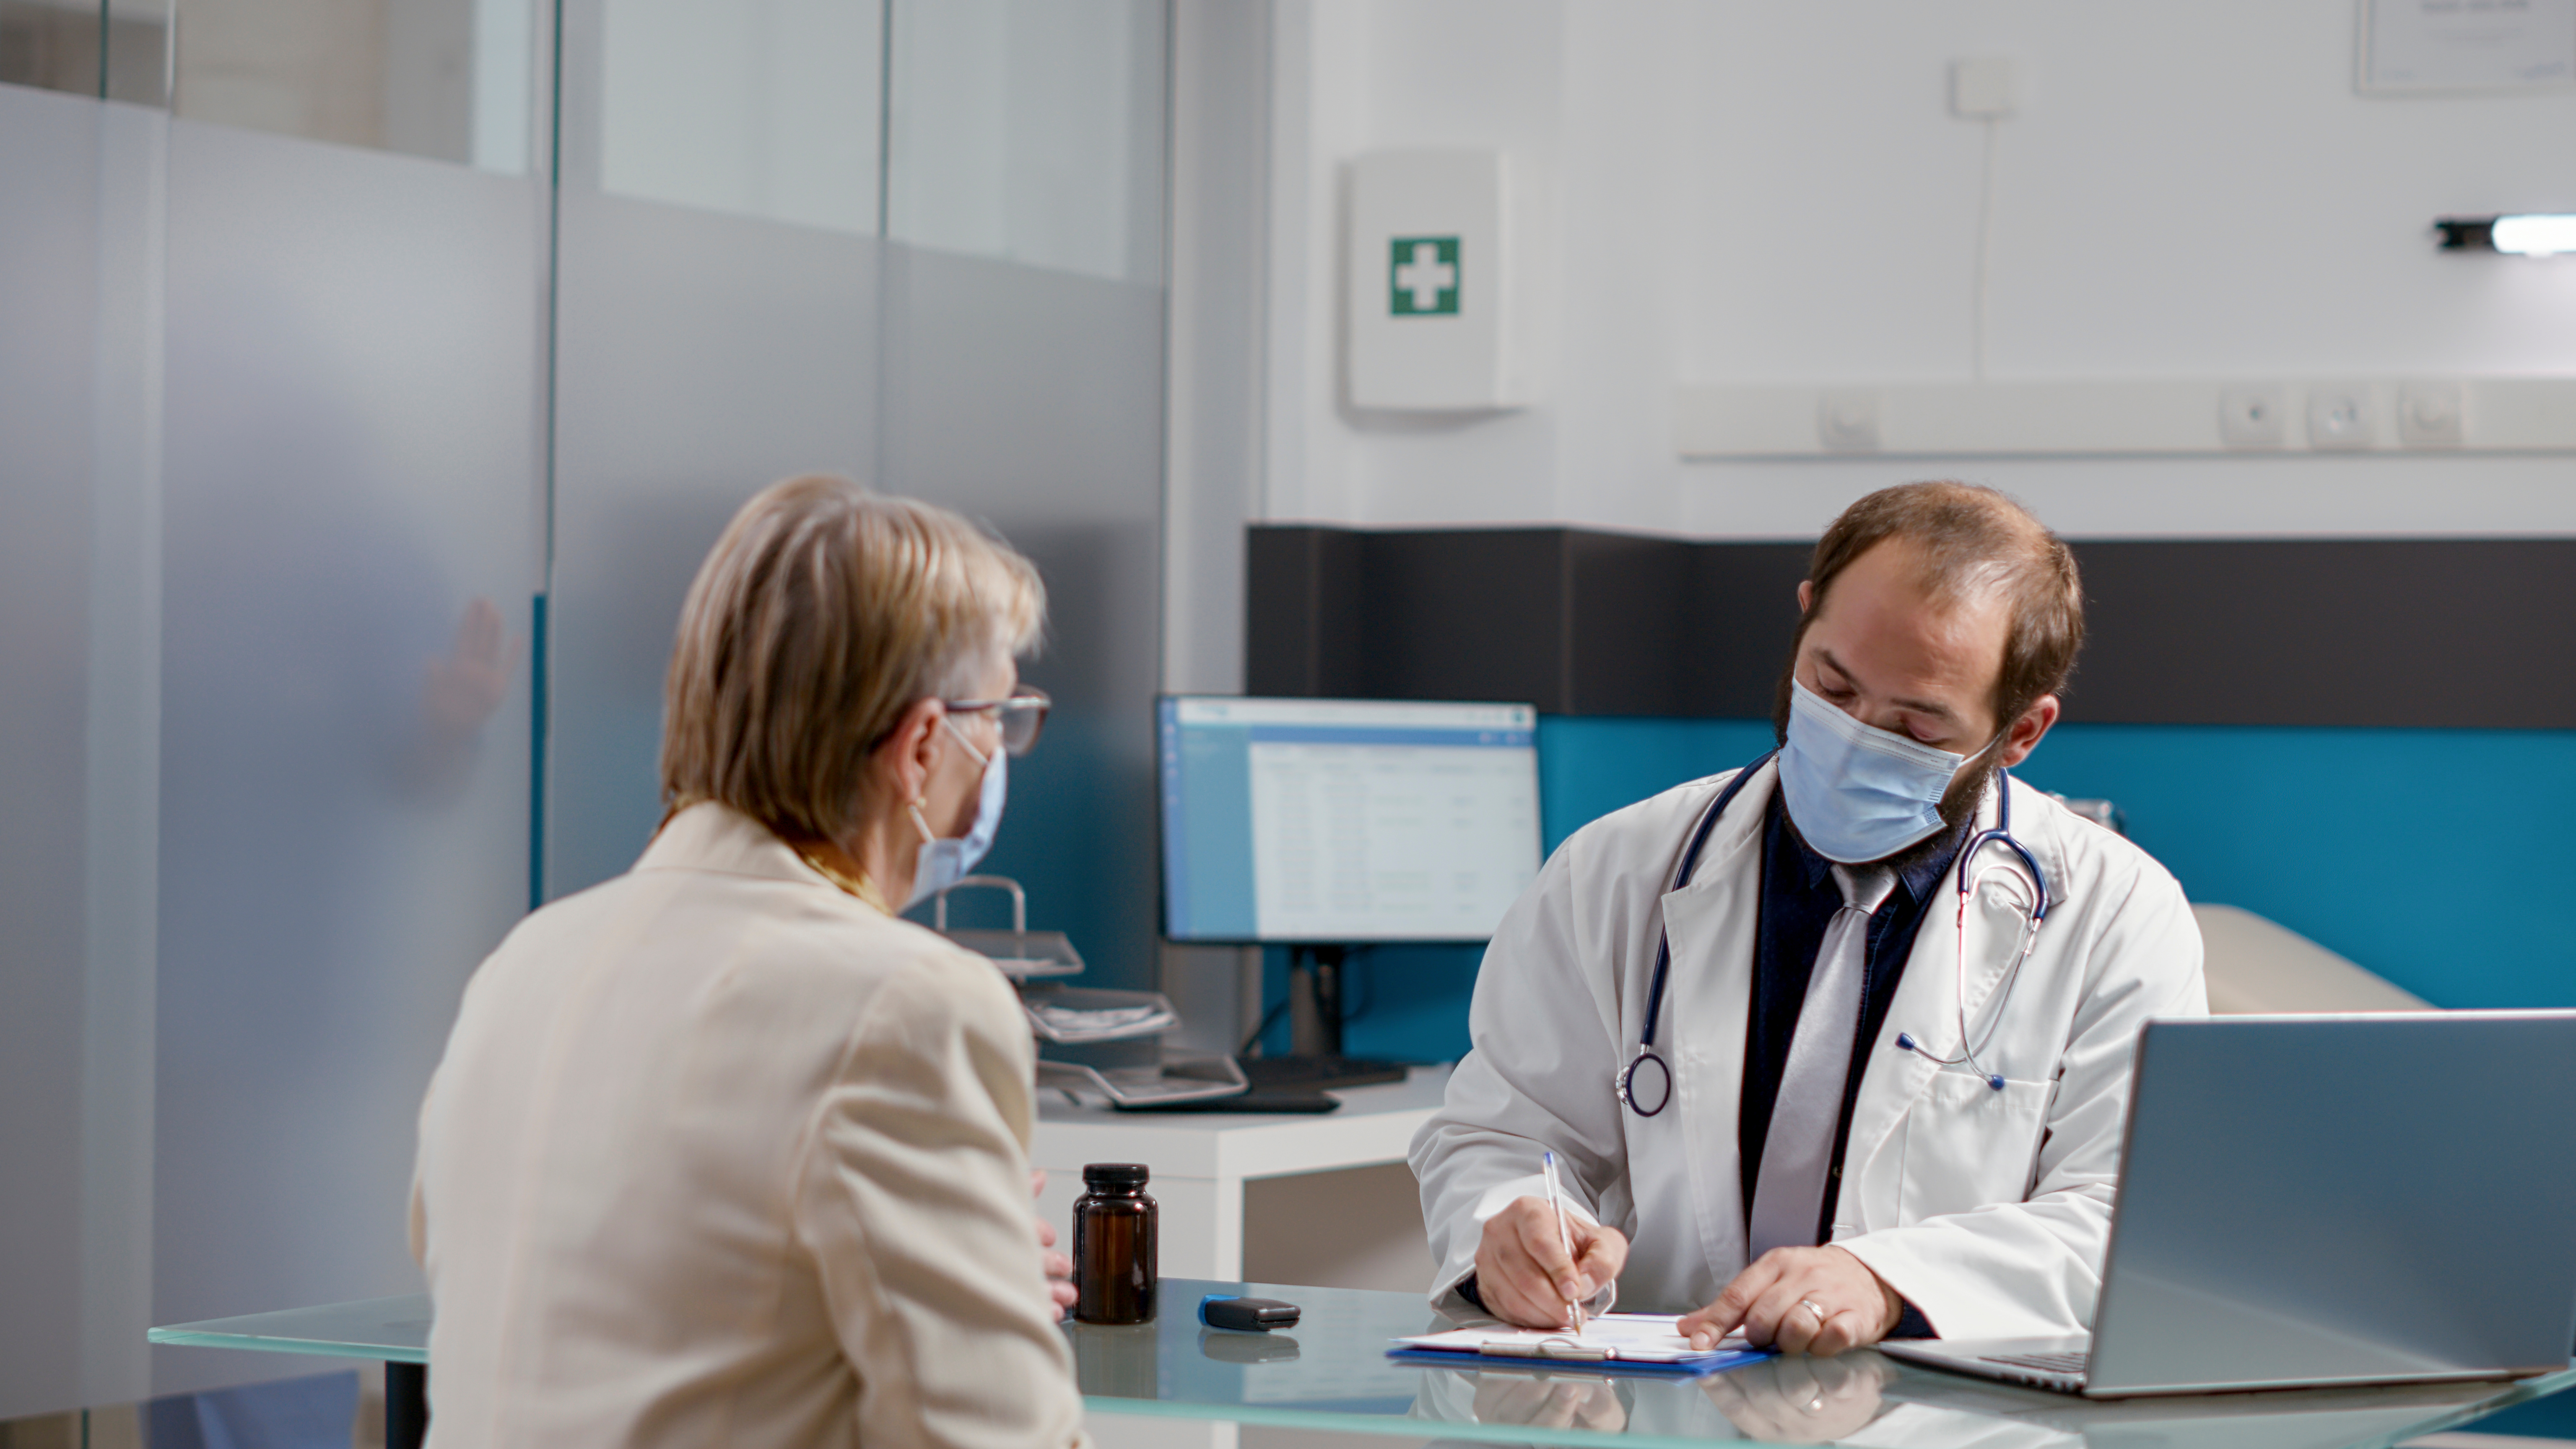 Imagen donde aparece un médico y un paciente en una consulta médica. El médico está escribiendo en un papel y la paciente observando lo que escribe. 